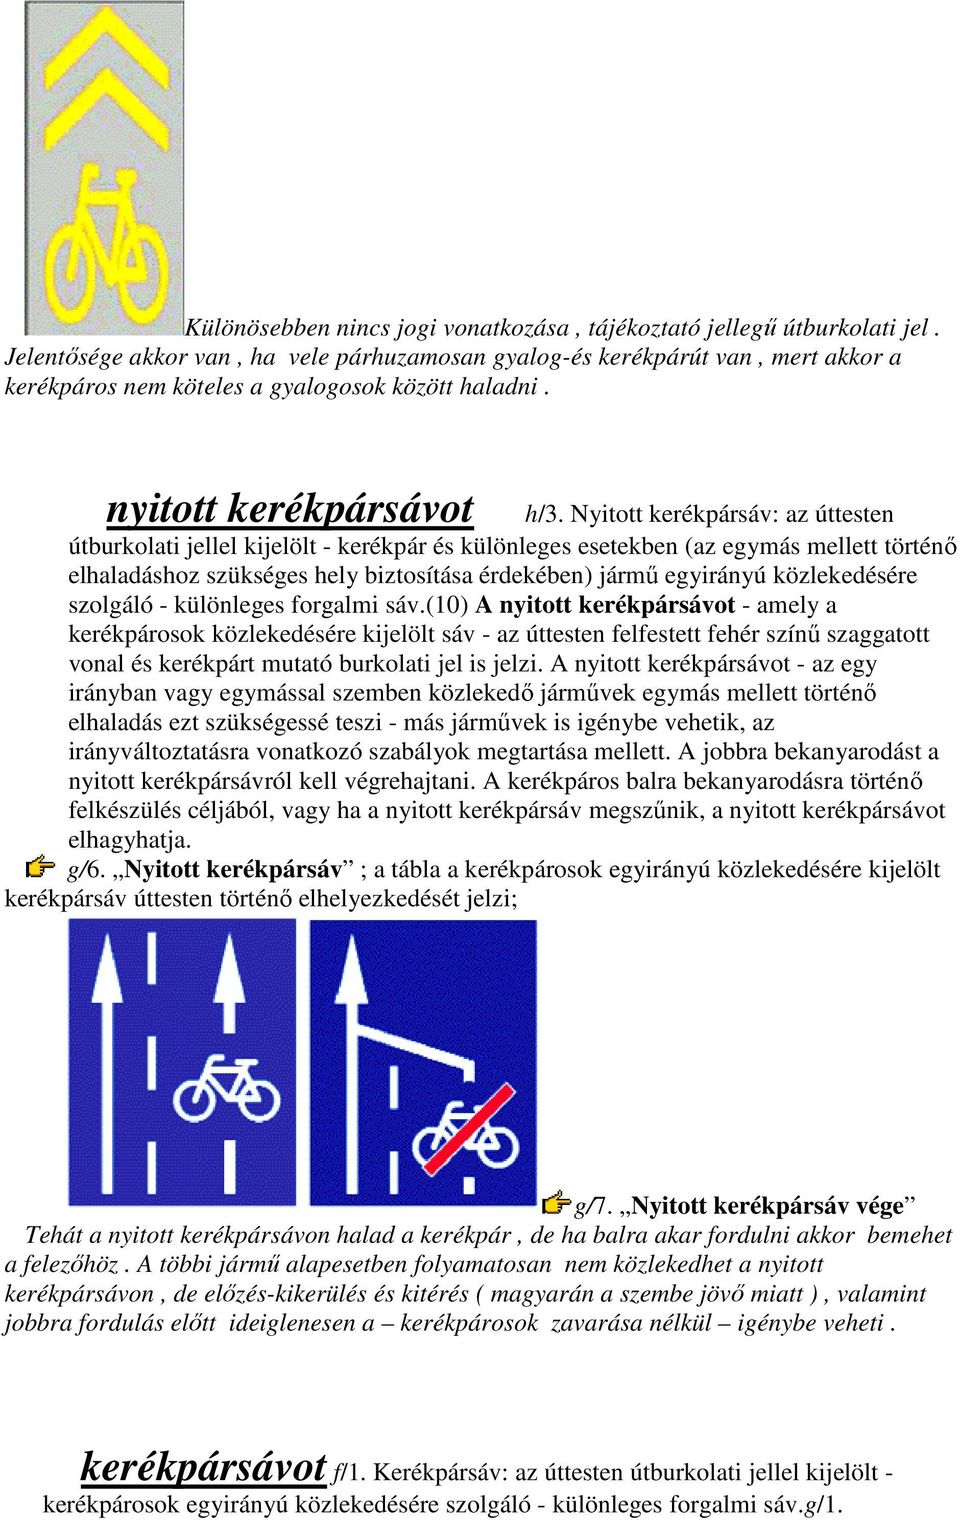 Nyitott kerékpársáv: az úttesten útburkolati jellel kijelölt - kerékpár és különleges esetekben (az egymás mellett történı elhaladáshoz szükséges hely biztosítása érdekében) jármő egyirányú